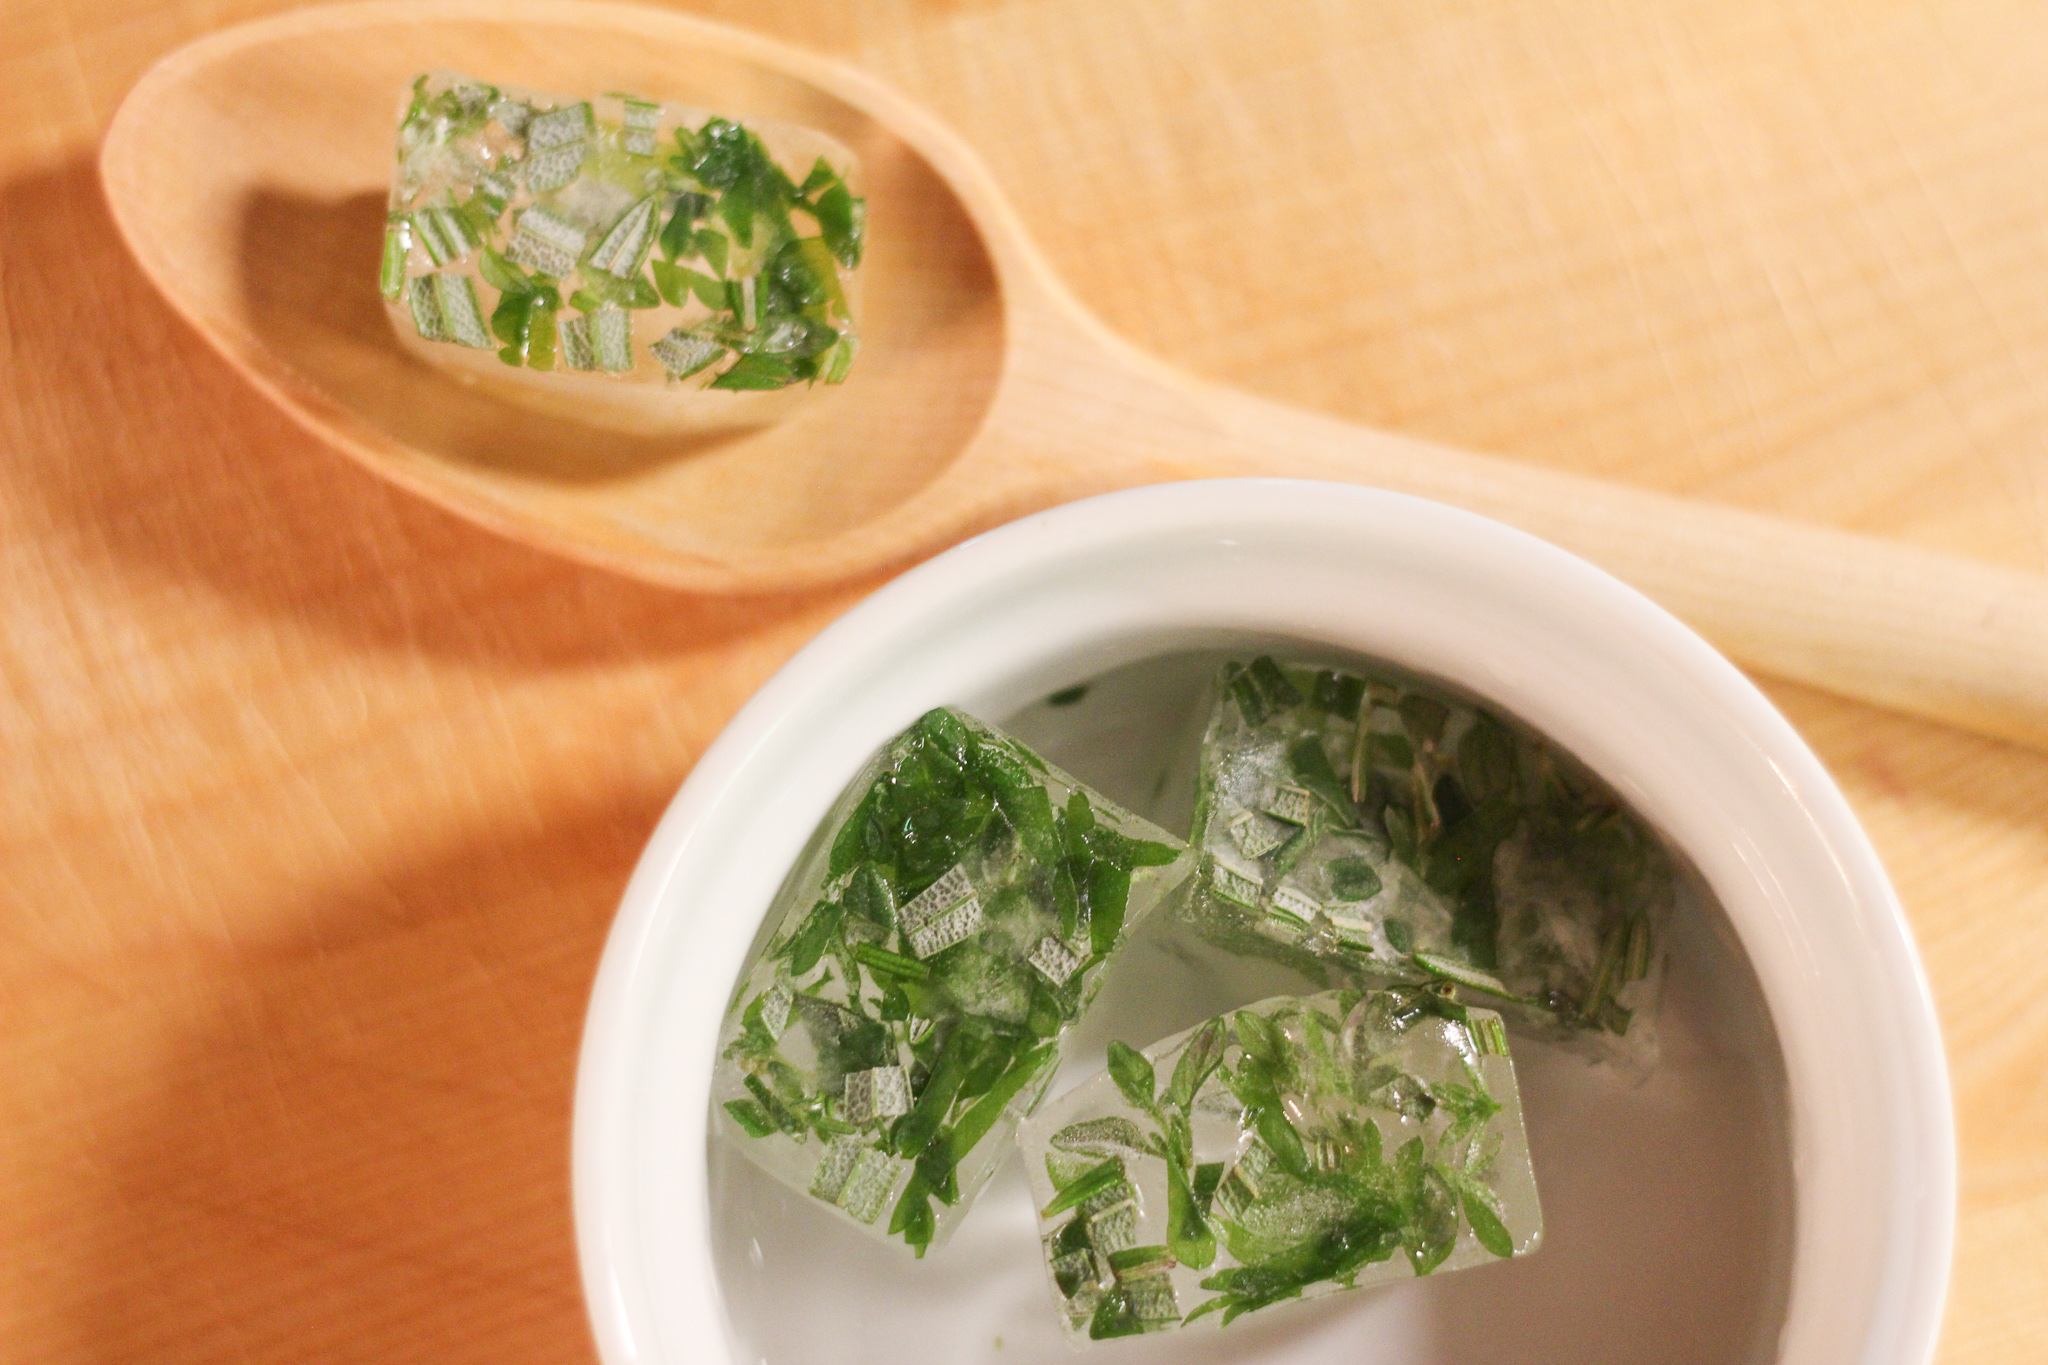 Freezing Herbs – 3 Simple Ways